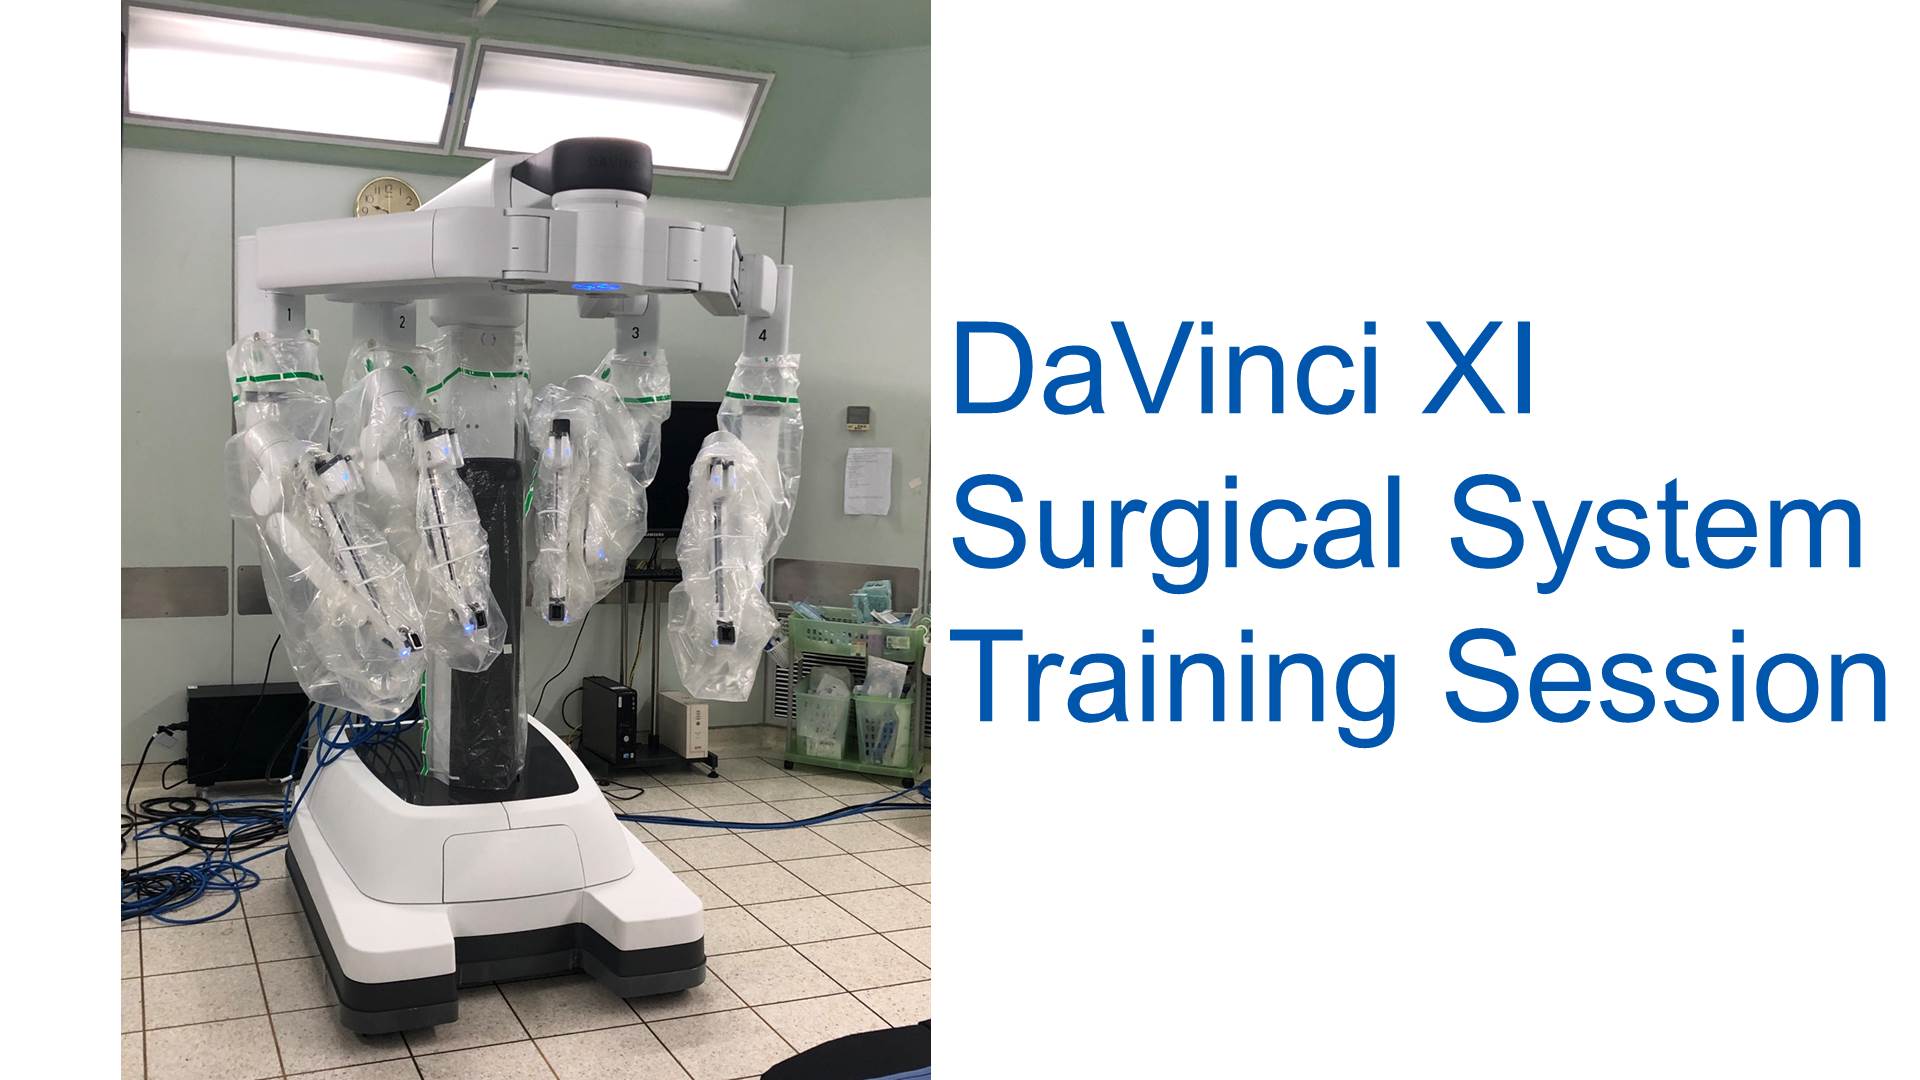 DAVINCI Xi Training Session at Siriraj